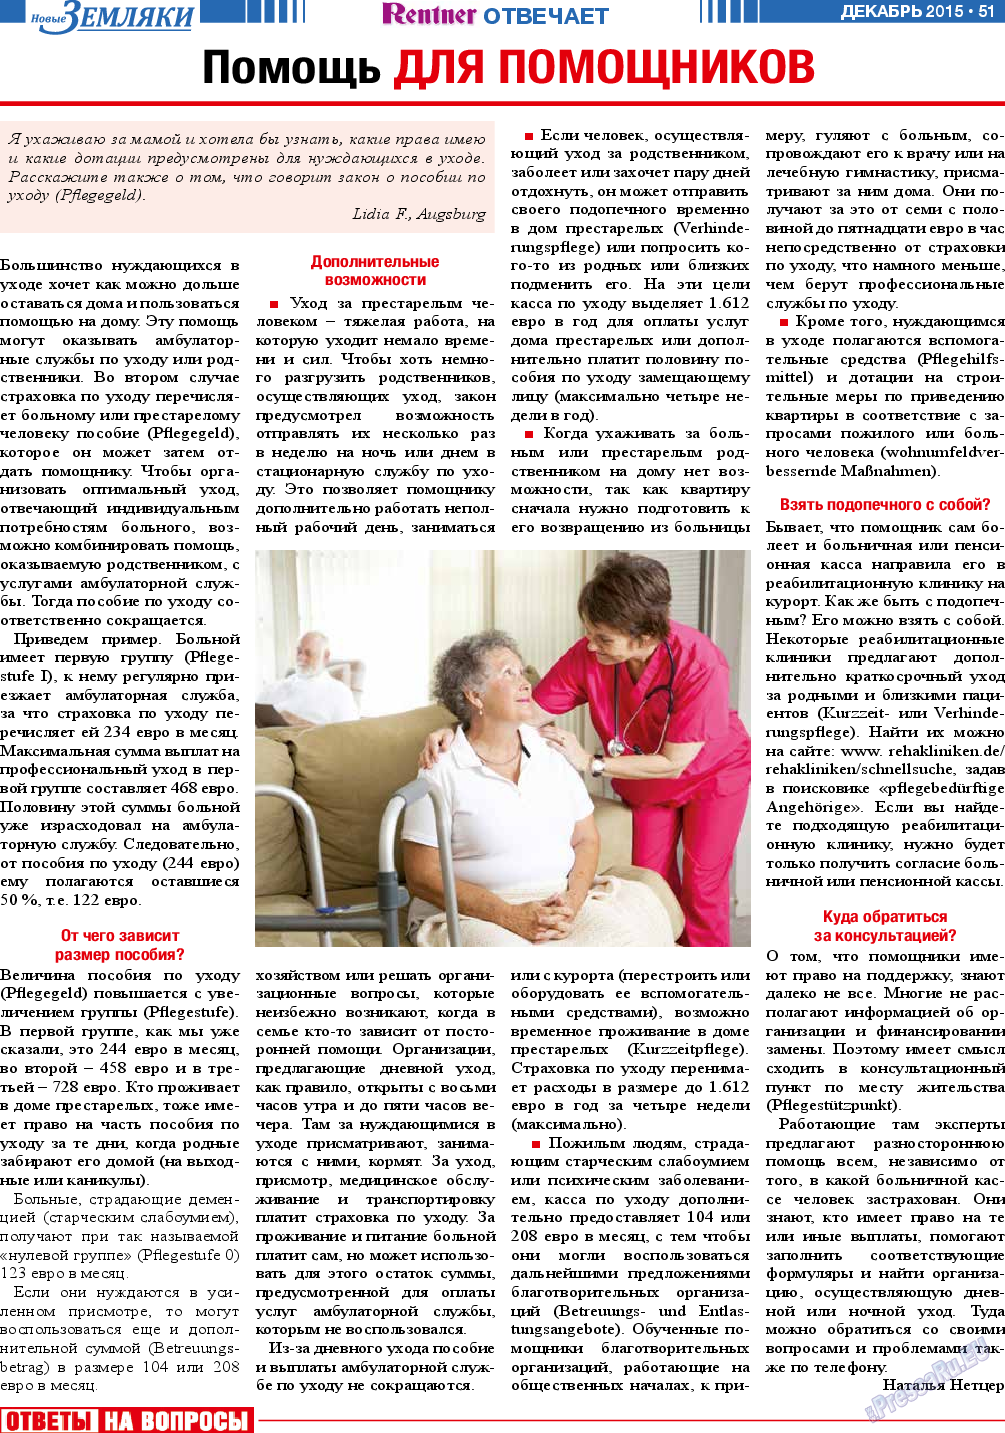 Новые Земляки (газета). 2015 год, номер 12, стр. 51